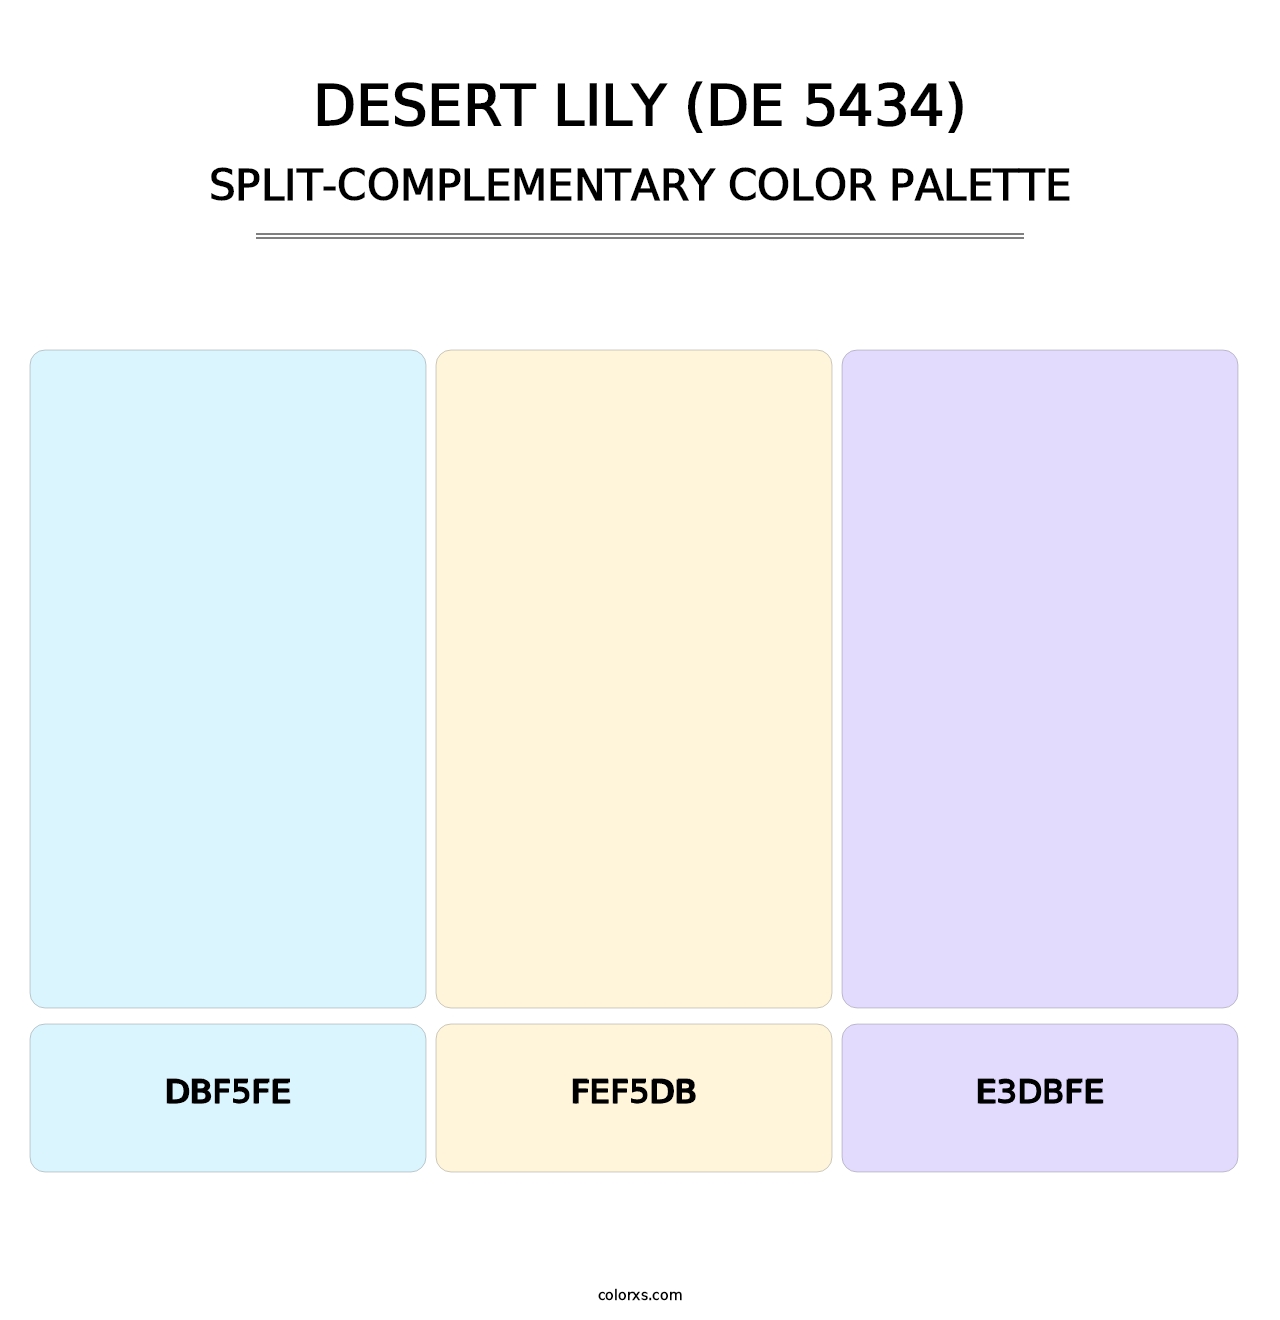 Desert Lily (DE 5434) - Split-Complementary Color Palette